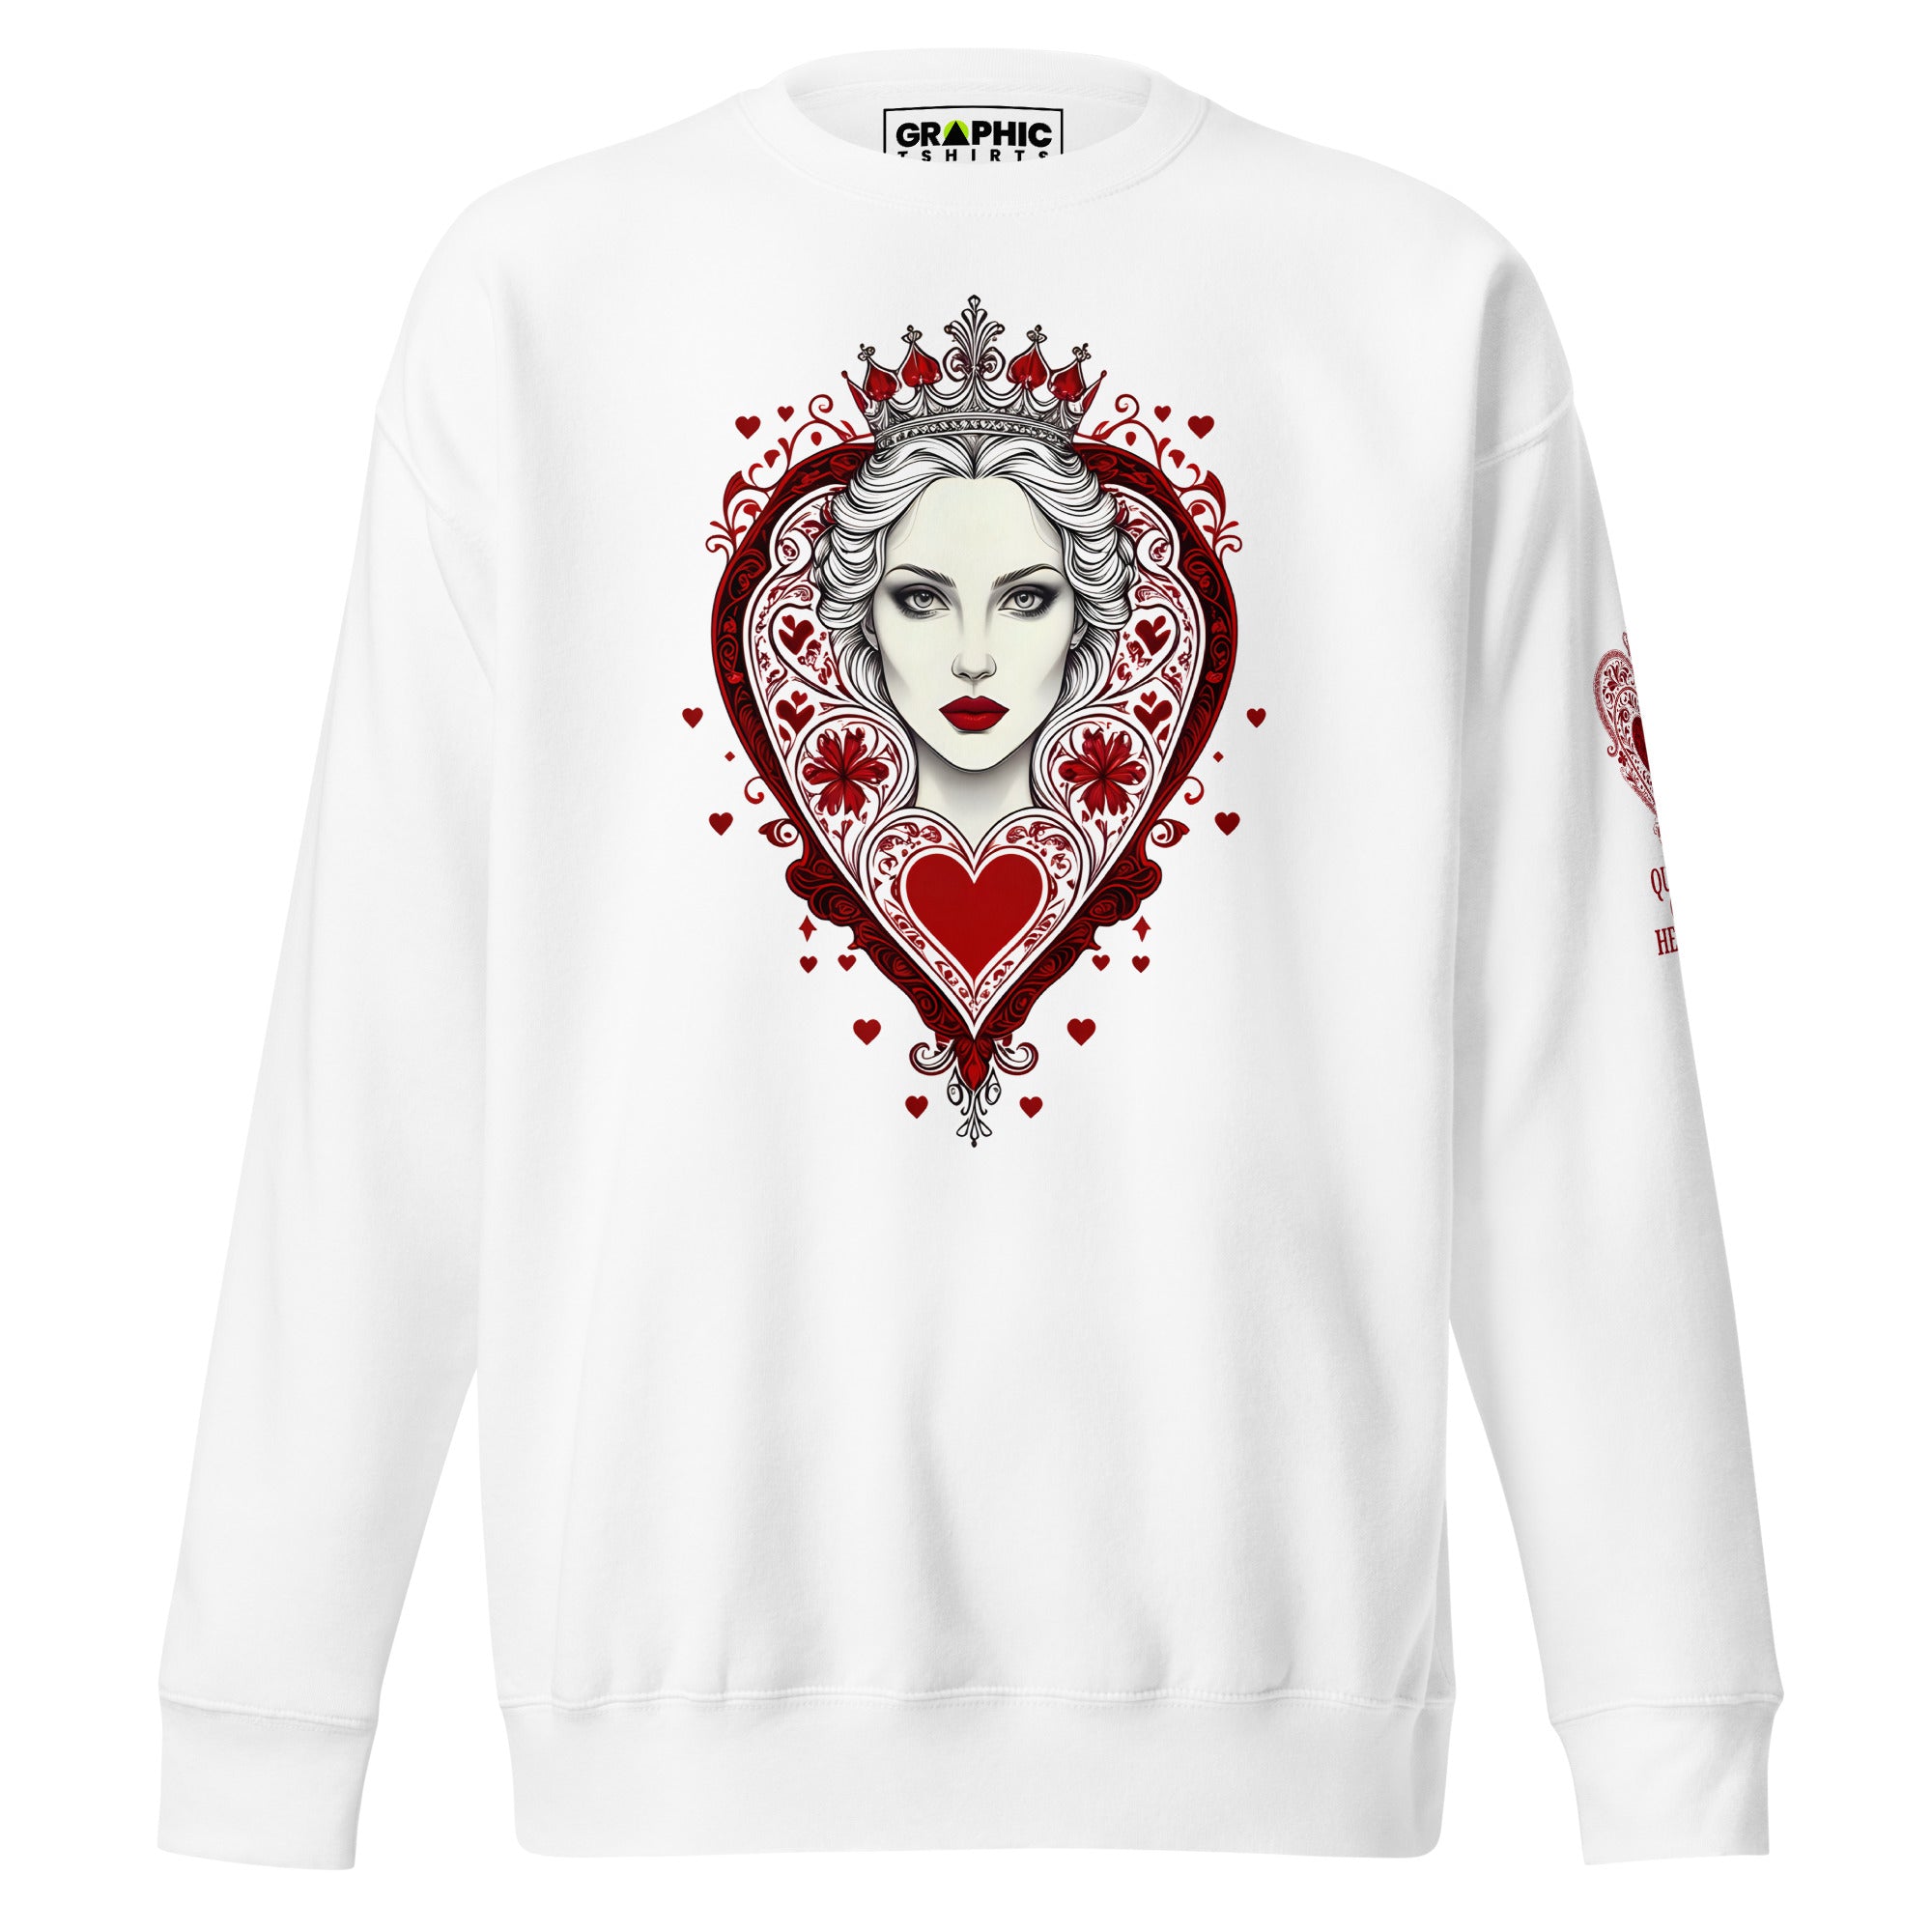 Unisex Premium Sweatshirt - Queen Of Hearts Series v.23